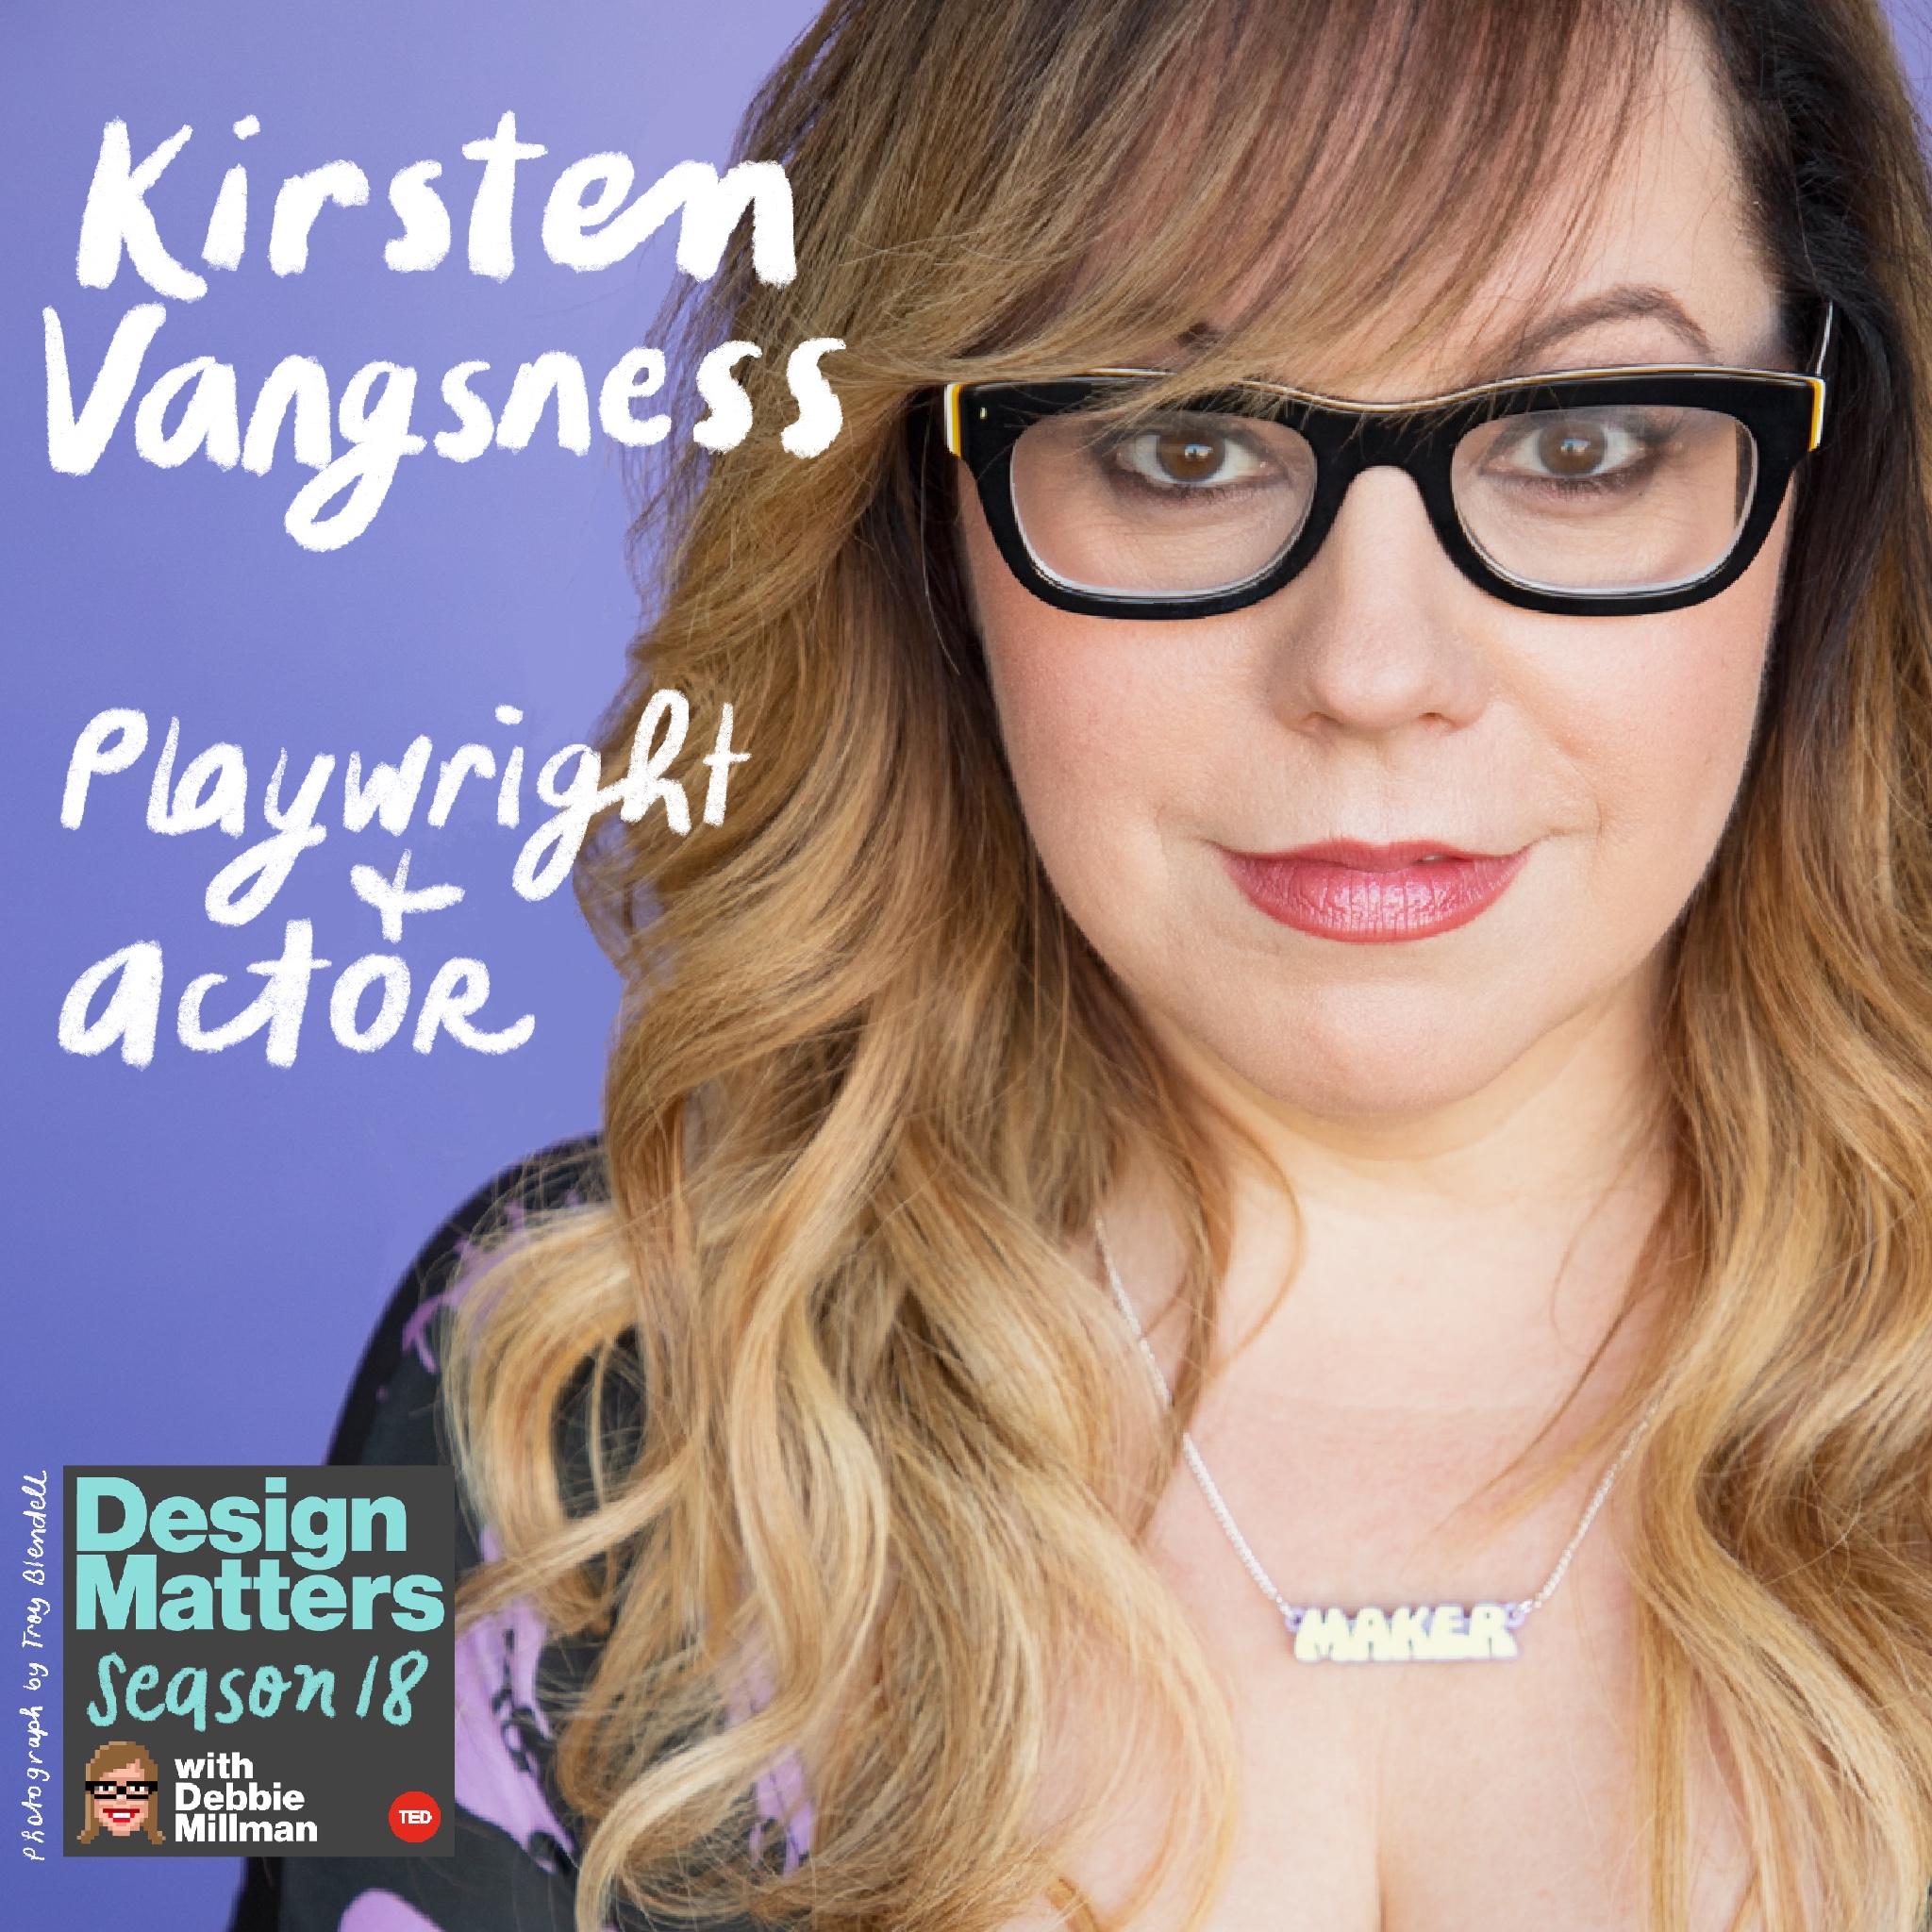 Thumbnail for "Kirsten Vangsness".